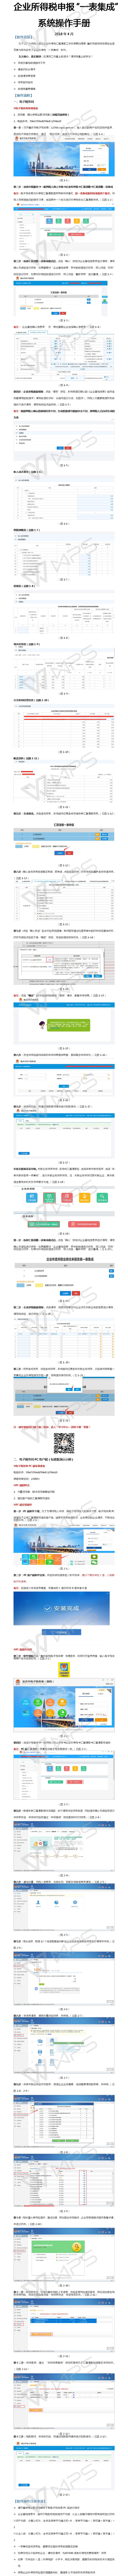 重庆国税企业所得税申报“一表集成”系统操作手册-min.jpg